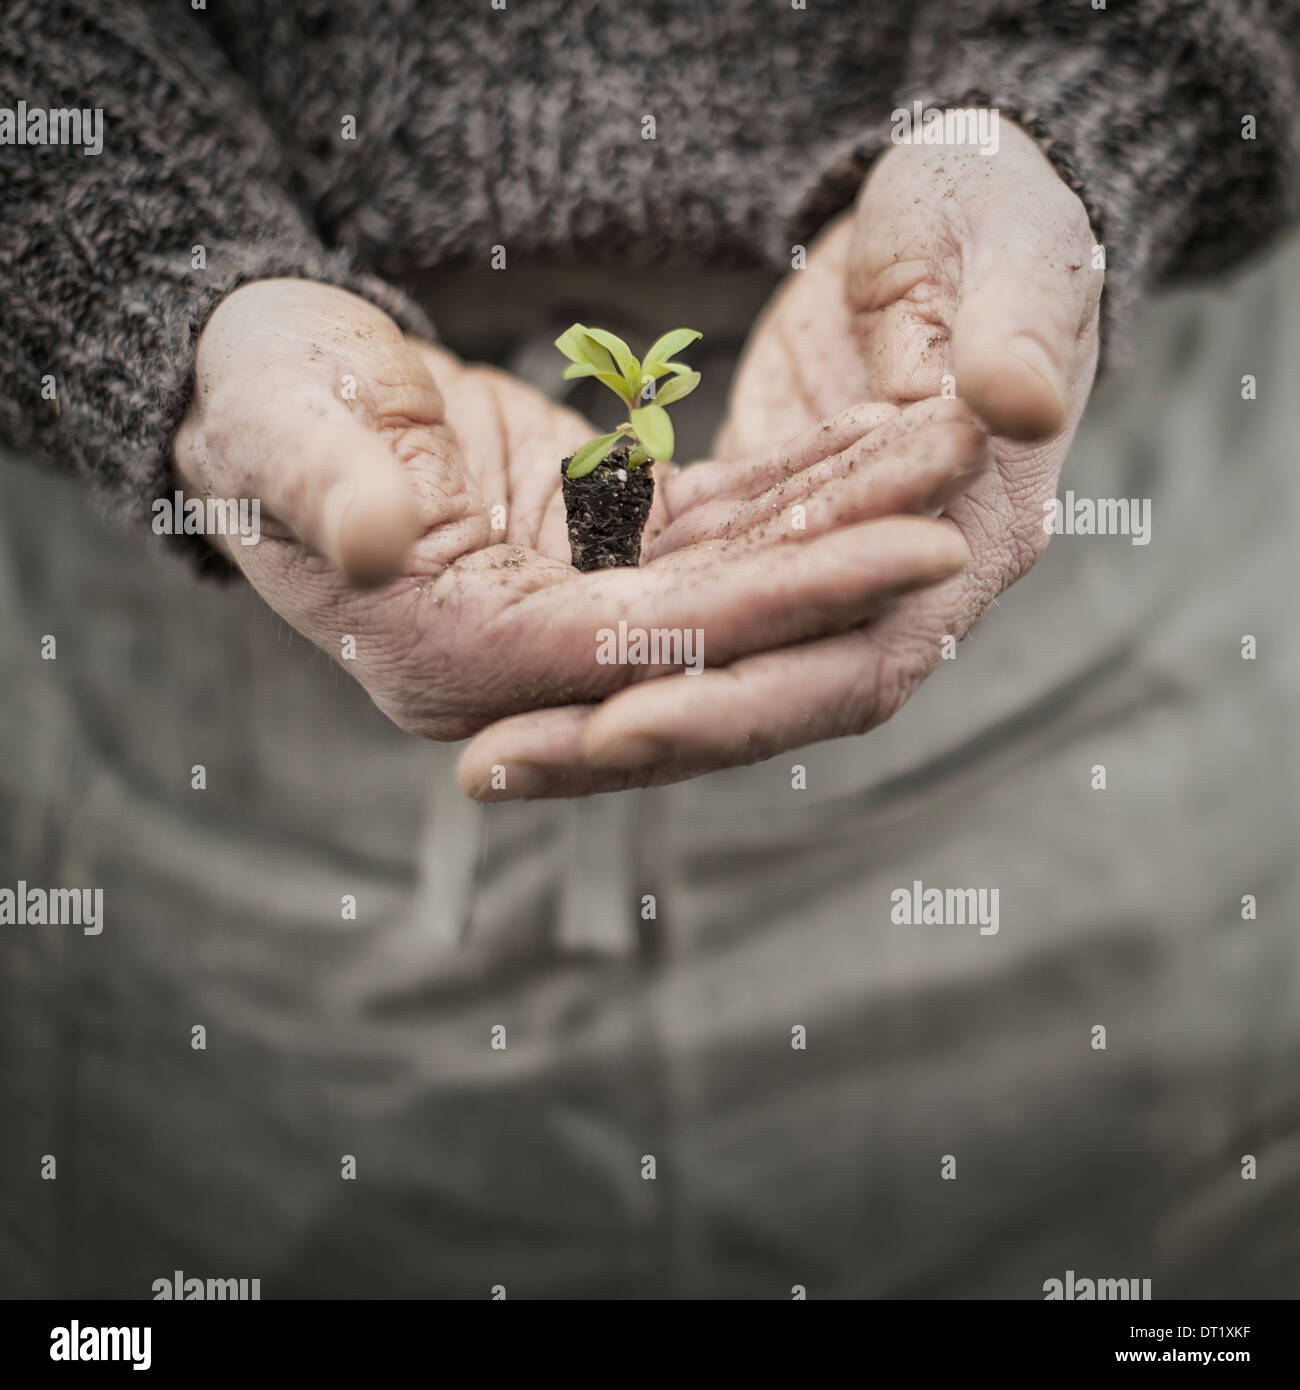 Eine Person in einem kommerziellen Gewächshaus einen kleine Pflanze Setzling in seiner hohlen Hand halten Stockfoto